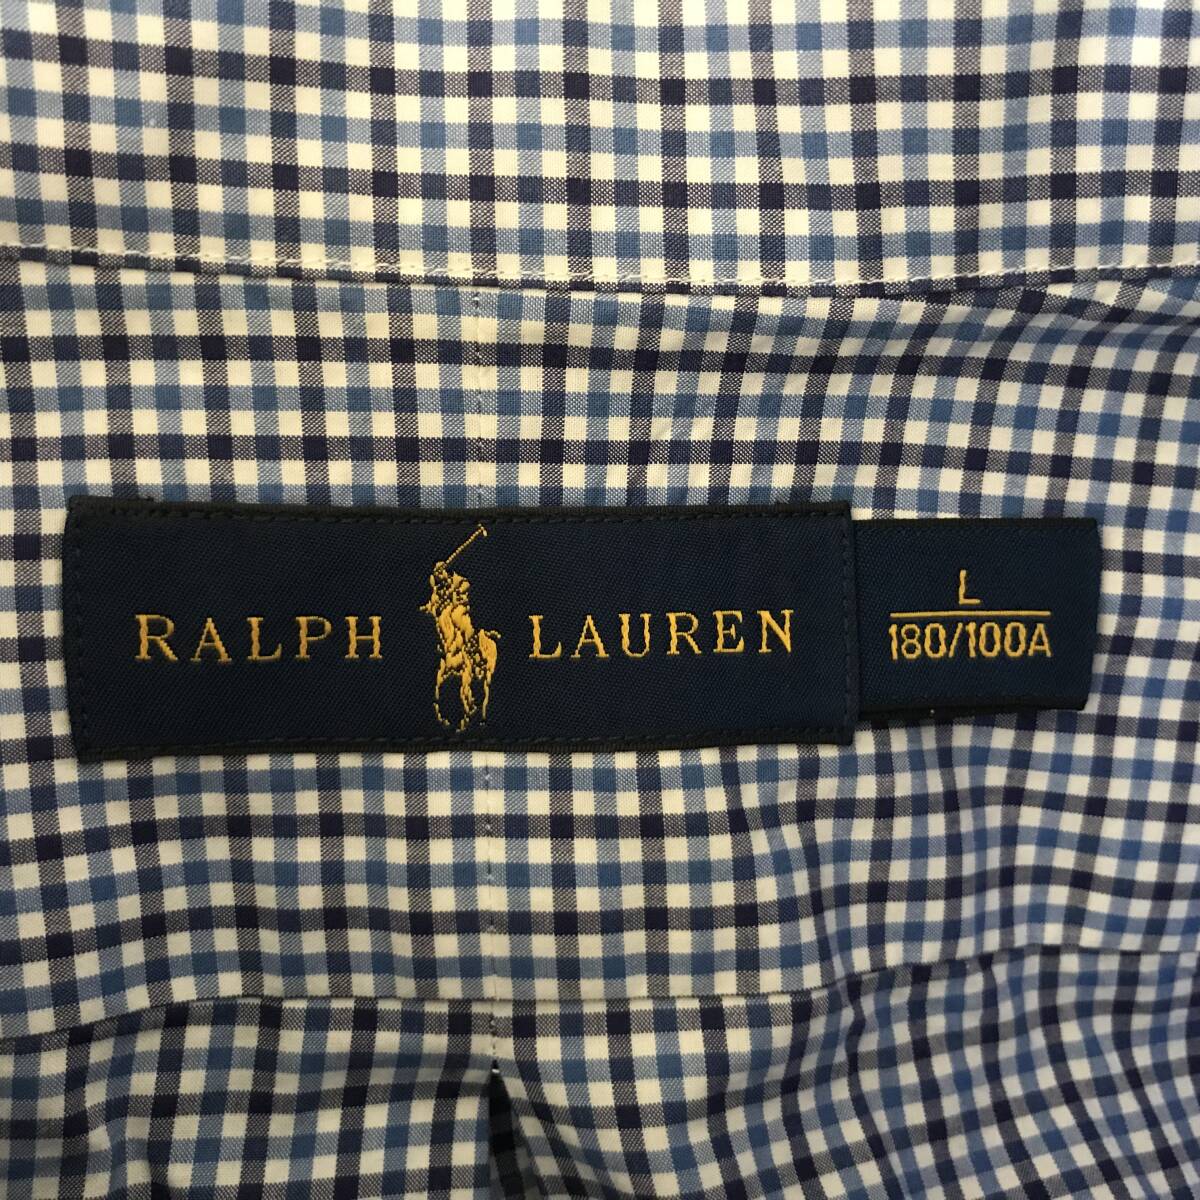 RALPH LAUREN ラルフローレン 正規品 メンズ ギンガムチェック柄 長袖B.D.シャツ 美品(ほぼ未着用) size L 180/100A_画像4